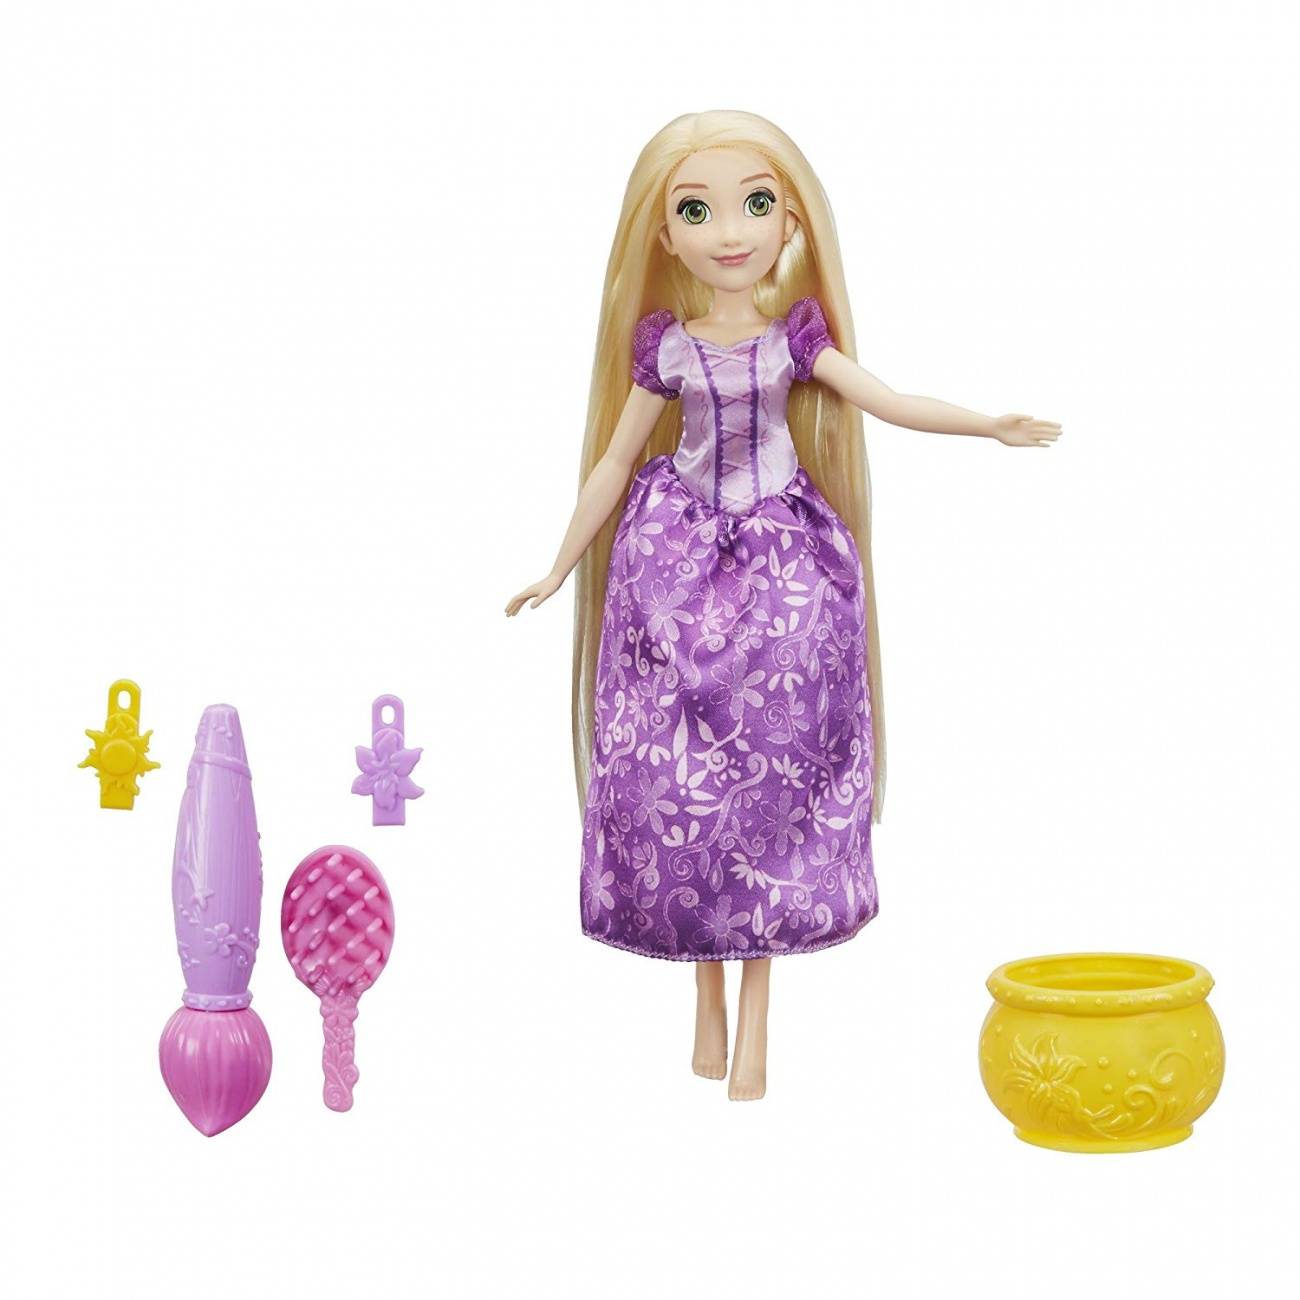 Кукла Рапунцель "Магия волос" игрушка Принцессы Дисней Hasbro E0064